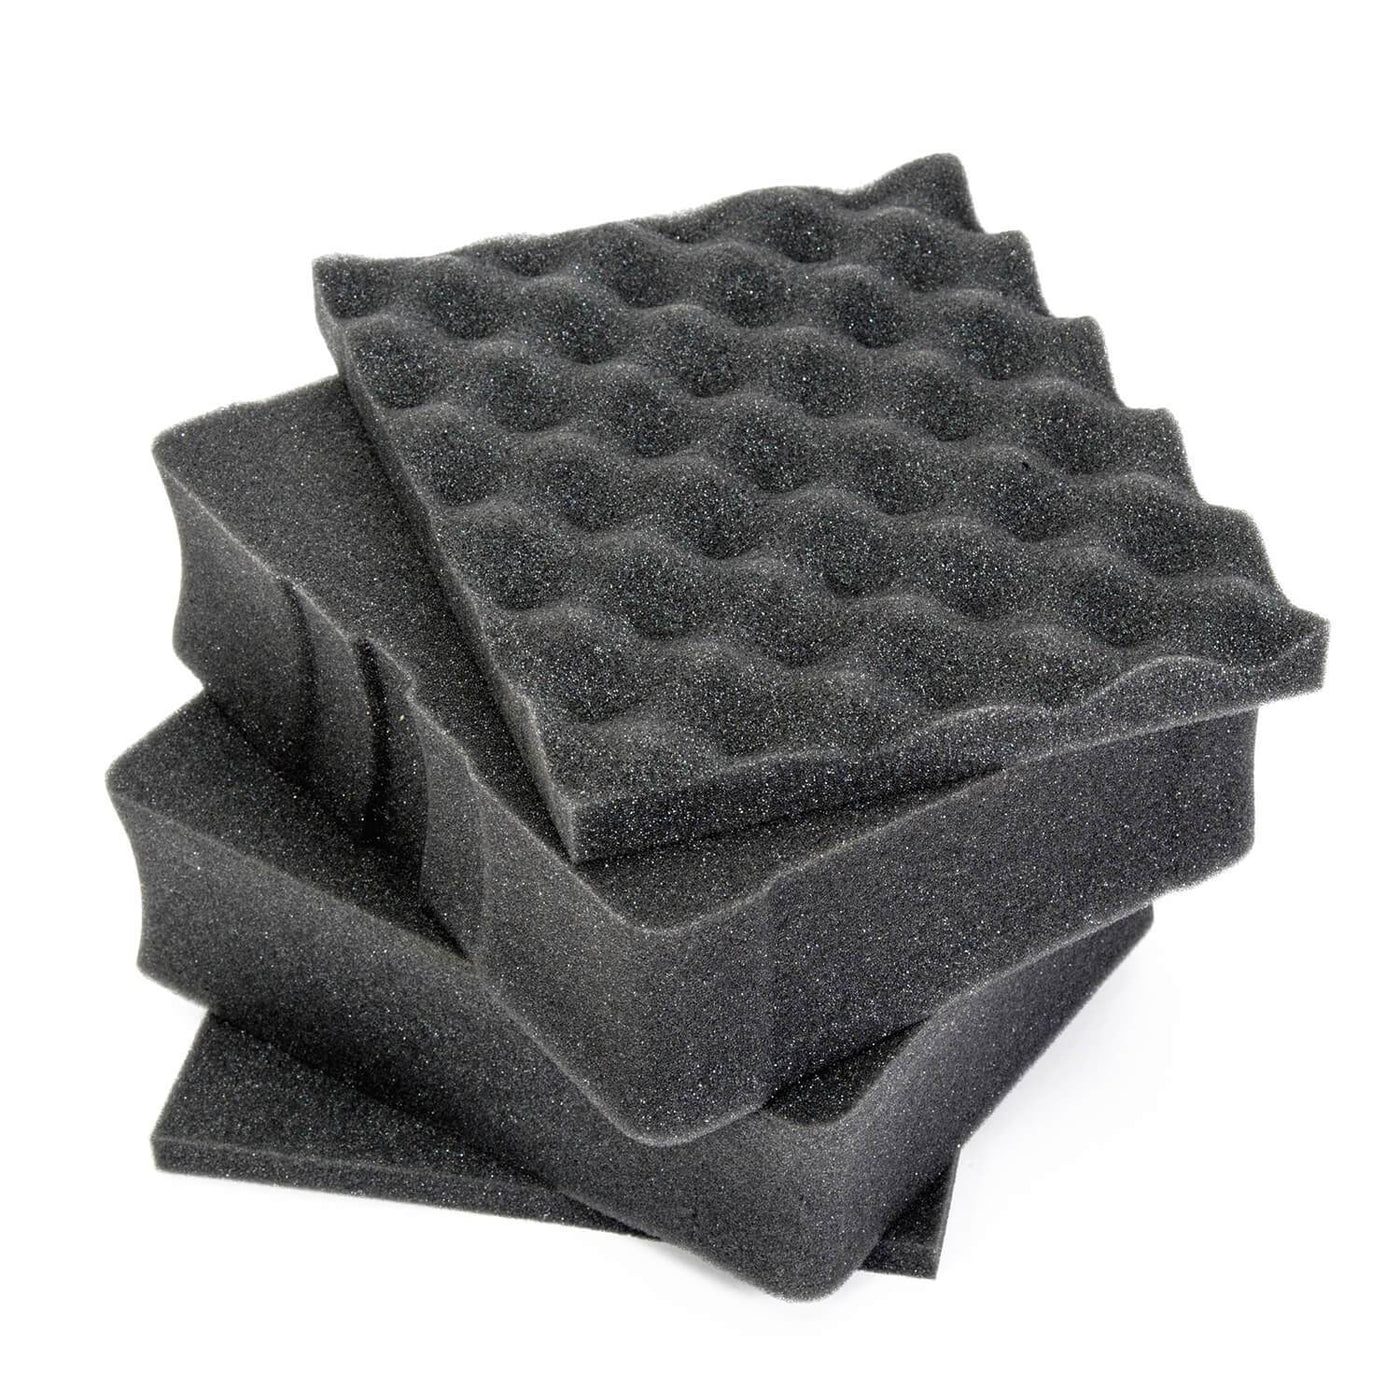 NANUK Cube Foams-Nanuk Accessories-Nanuk 908 Cubed Foam-NANUK